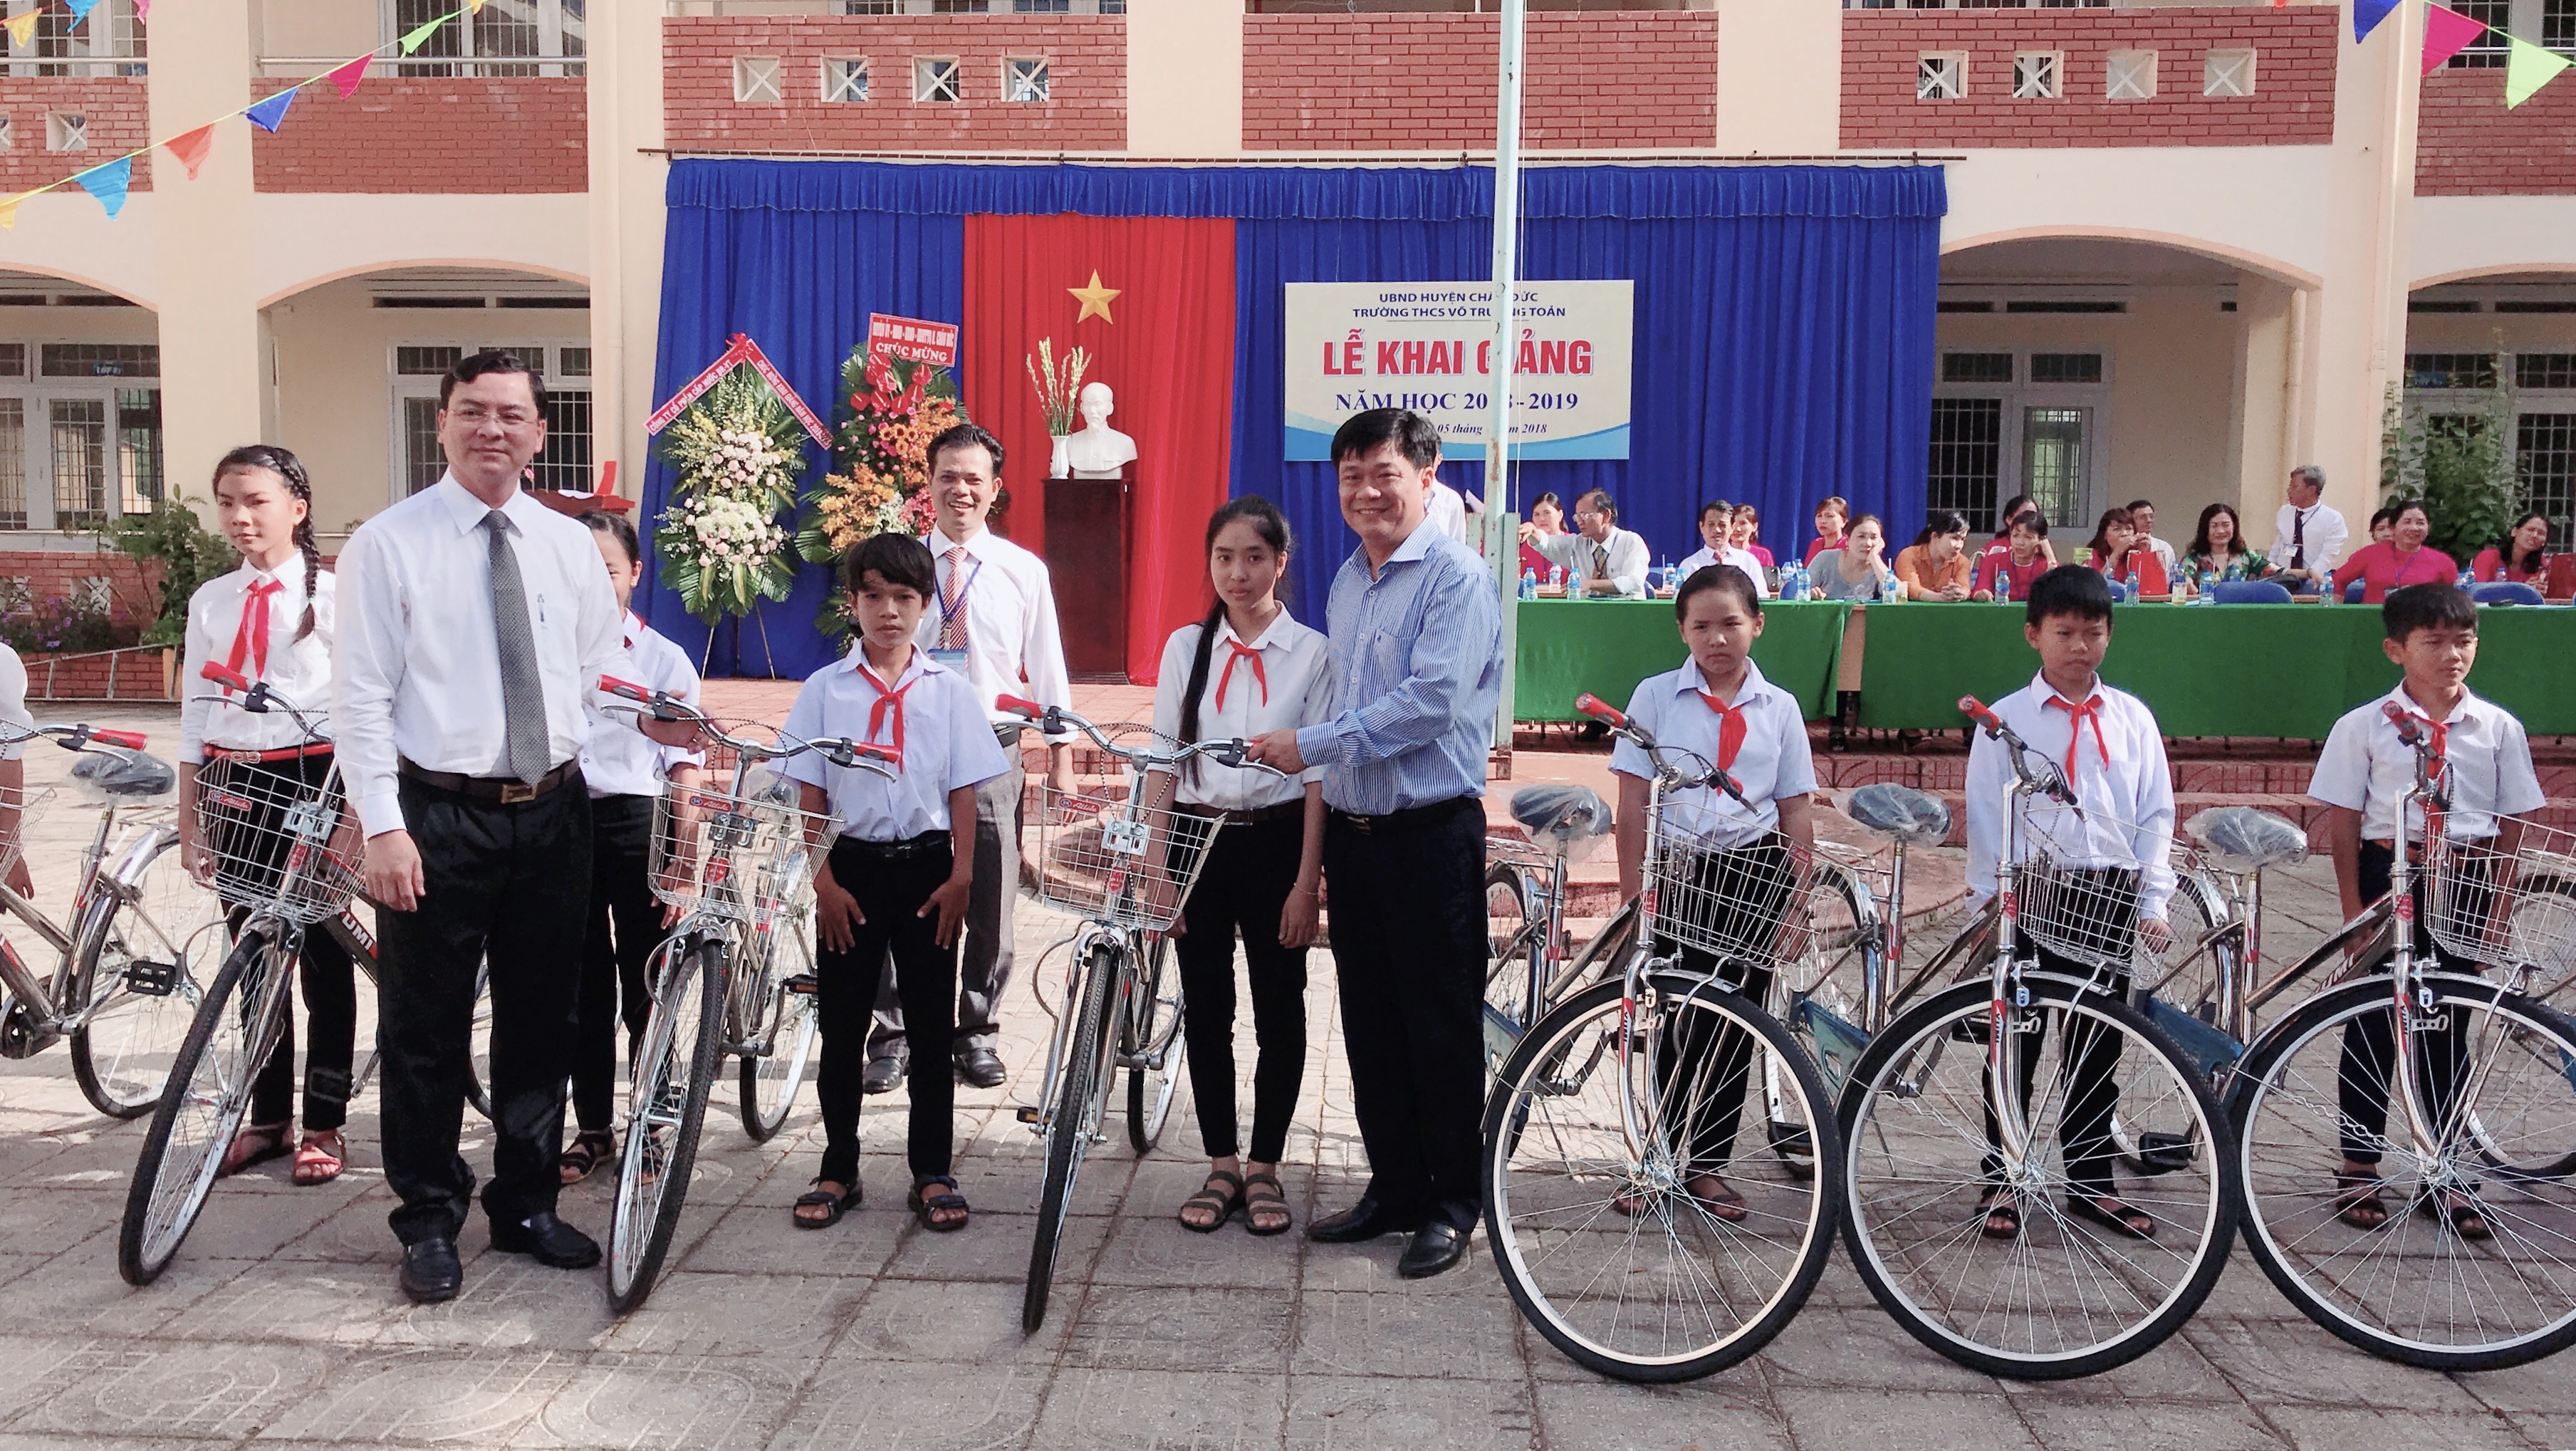 Ông Nguyễn Công Vinh, Chủ tịch UBND huyện Châu Đức và ông Nguyễn Châu Trực, Phó Tổng Giám đốc BWACO (phải) đến dự Lễ khai giảng và tặng 20 chiếc xe đạp (2 triệu đồng/chiếc) do BWACO tài trợ cho HS có hoàn cảnh khó khăn của Trường THCS Võ Trường Toản (huyện Châu Đức). Ảnh: Minh Tâm